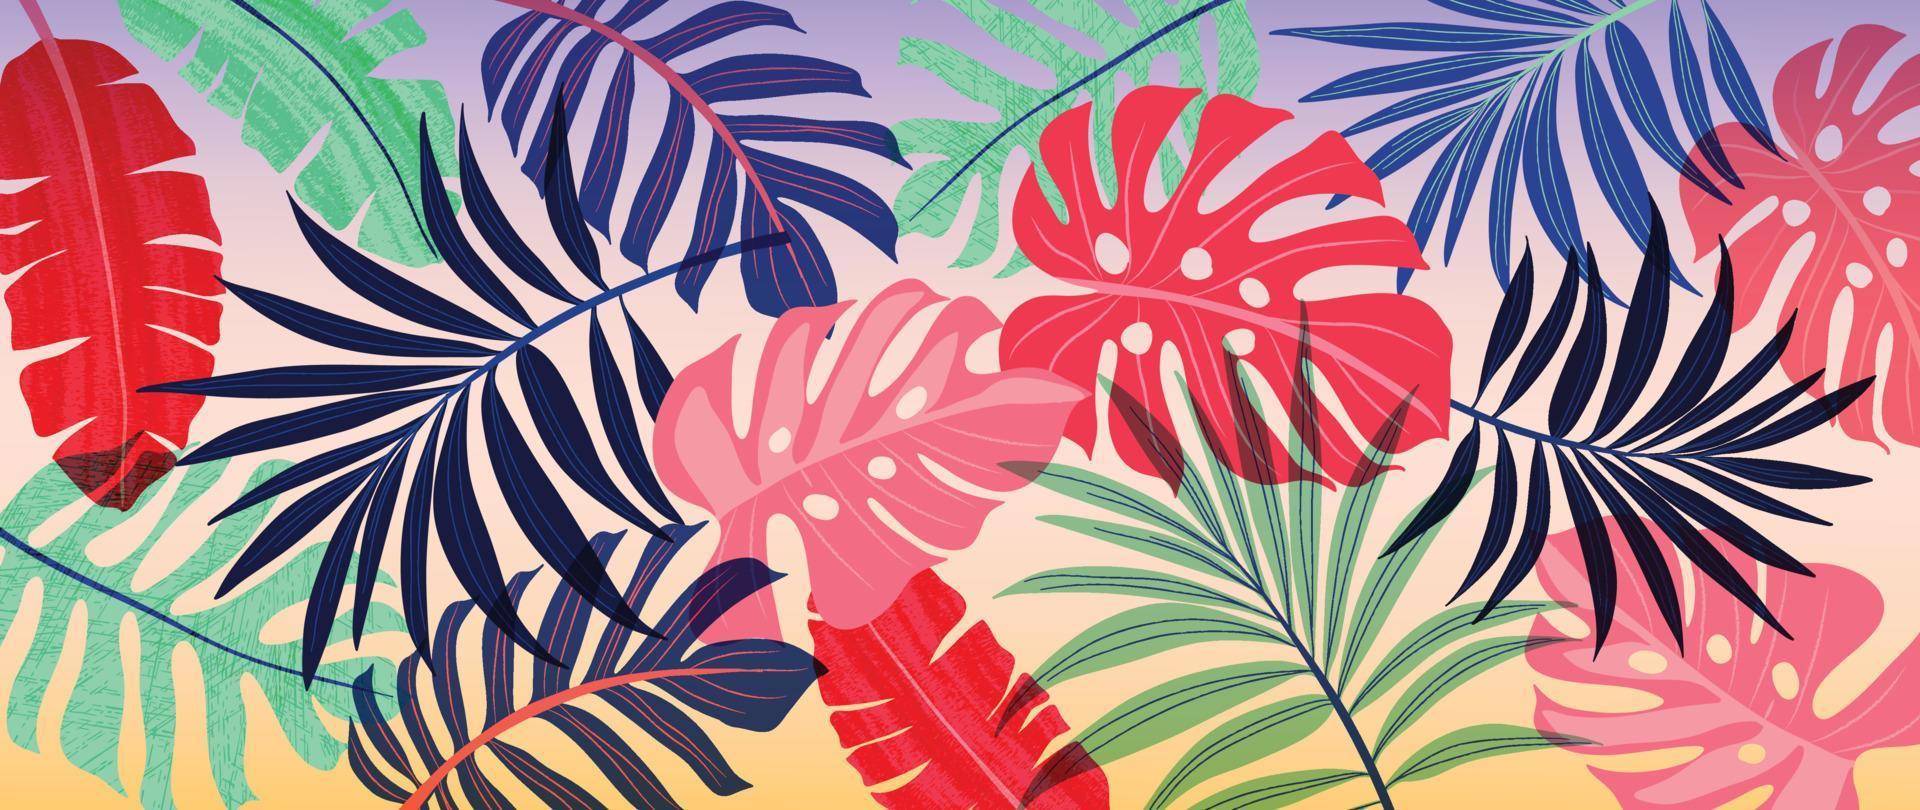 Ilustración de vector de fondo tropical colorido. plantas de la selva, hojas de palma de monstera, exótica textura de acuarela grunge estilo primavera verano. diseño de arte contemporáneo para la decoración del hogar, papel tapiz.